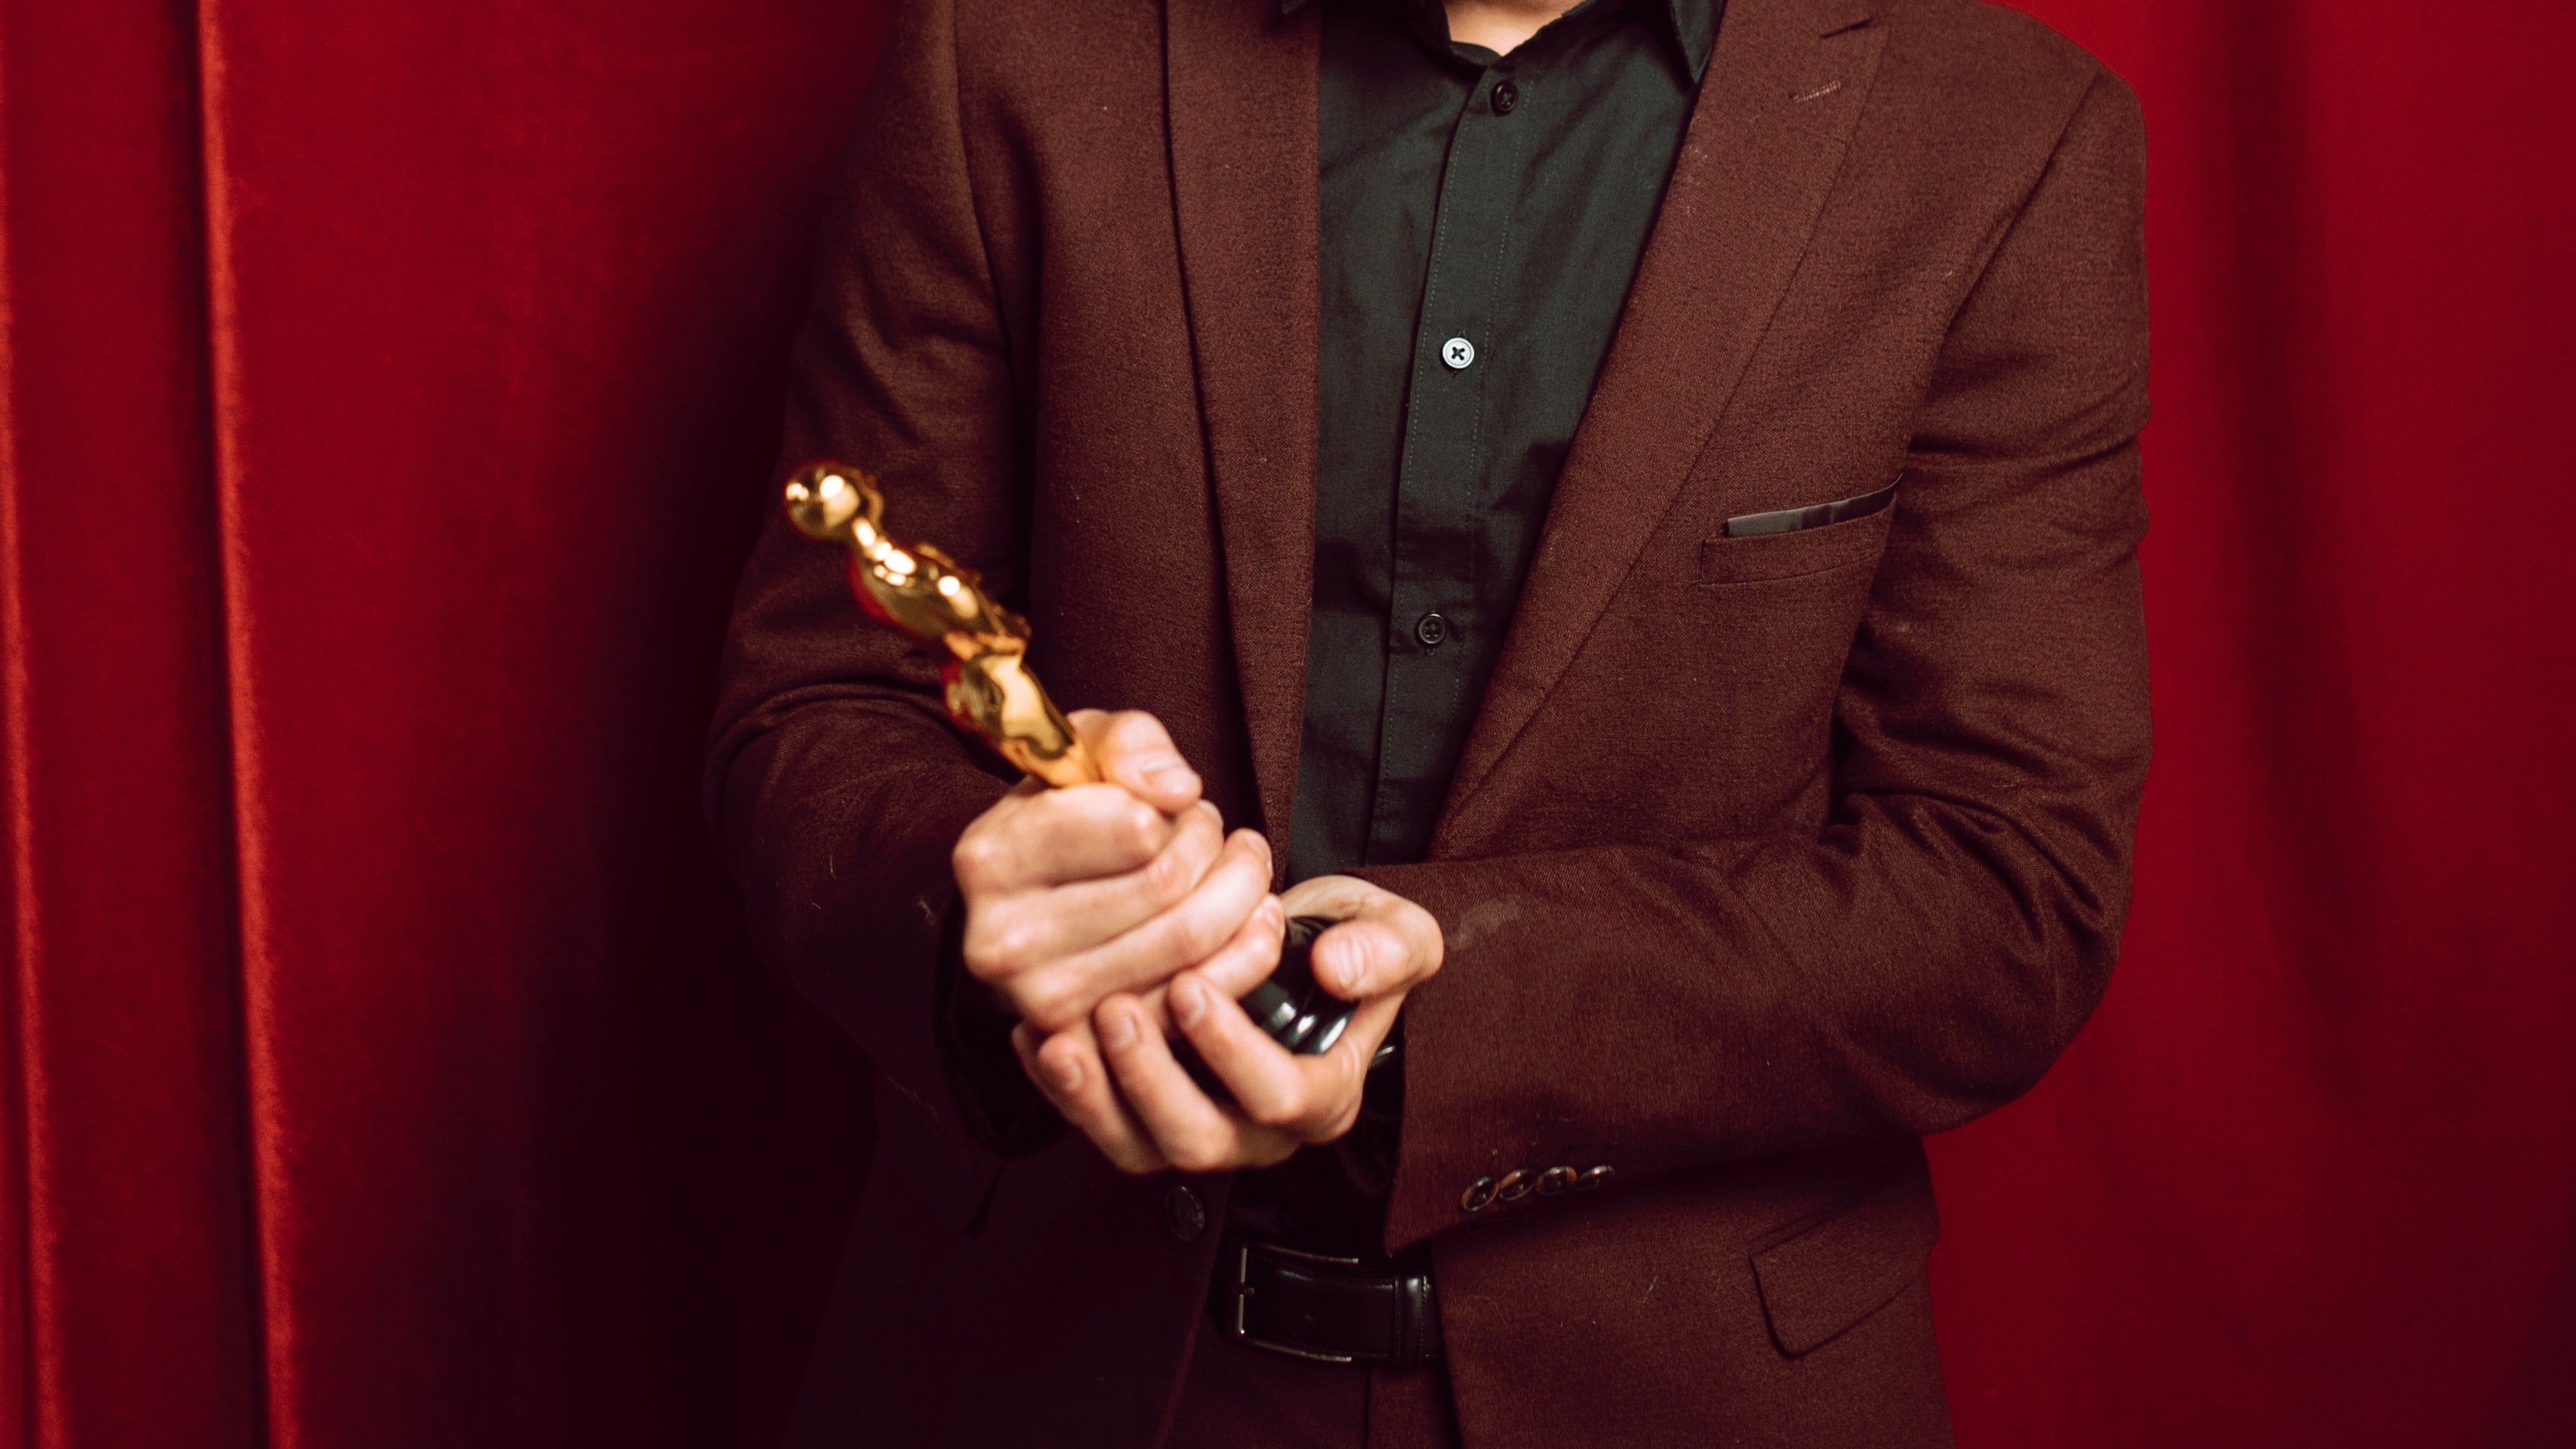 Premios Oscar: un beso sorpresa, un hombre desnudo y otros incómodos momentos de la premiación 